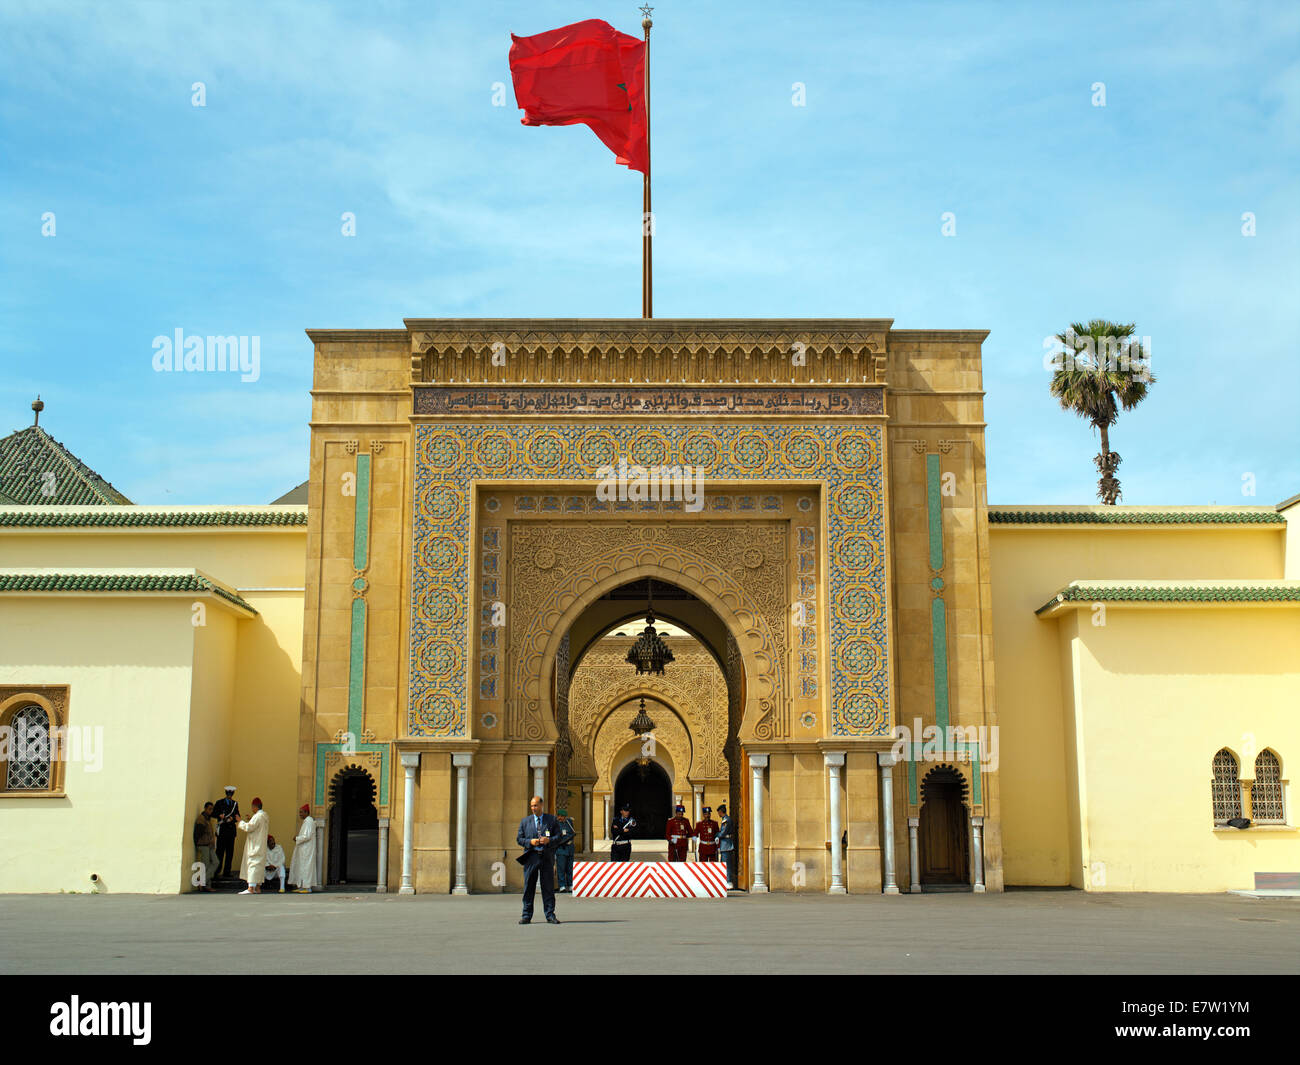 The Royal palace of Rabat Stock Photo